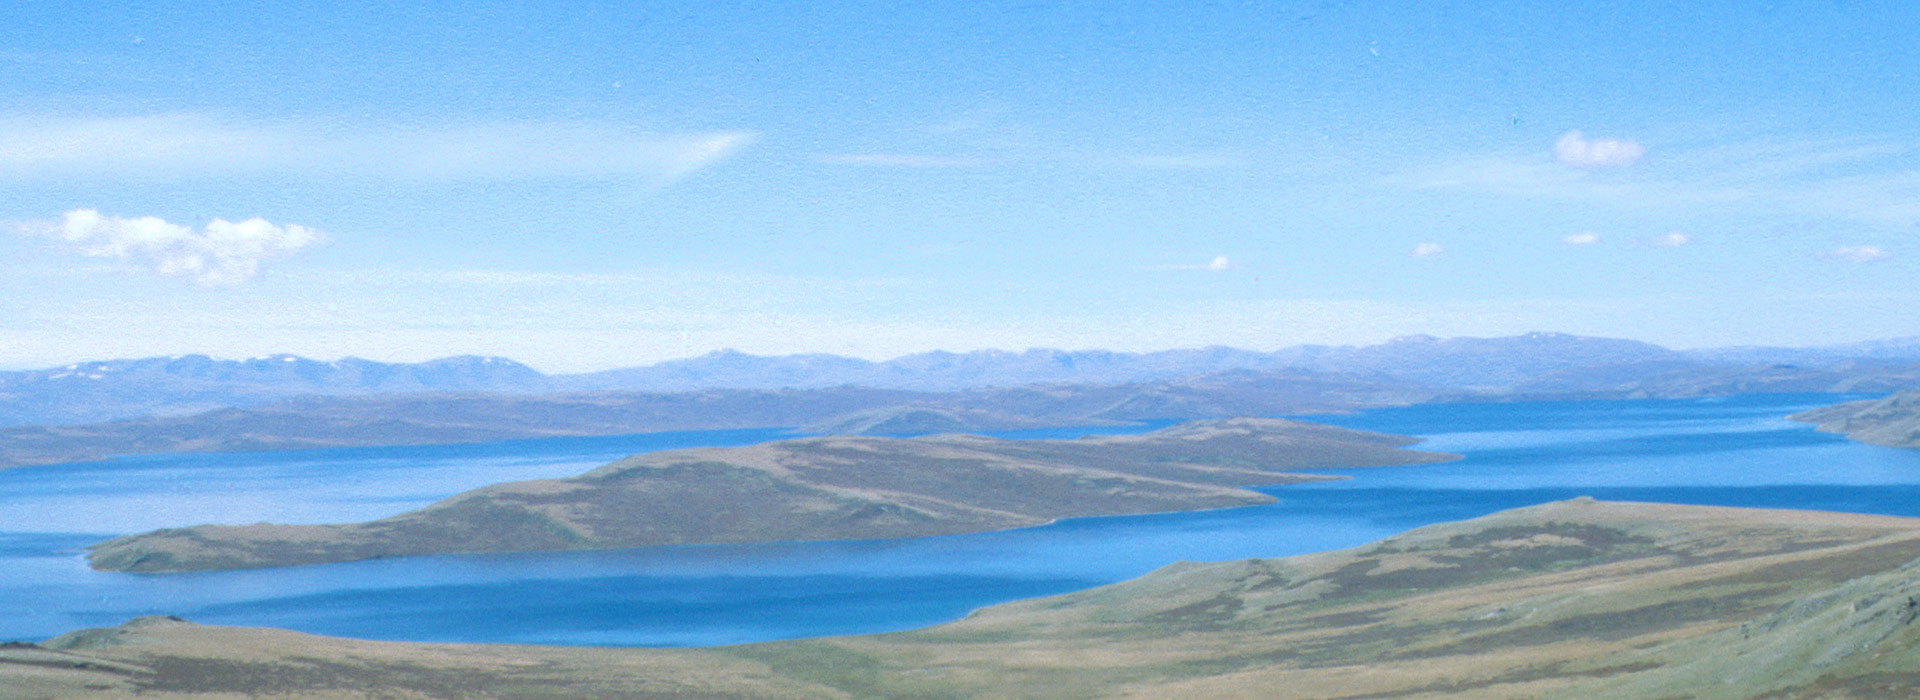 uvs-lake-mongolia